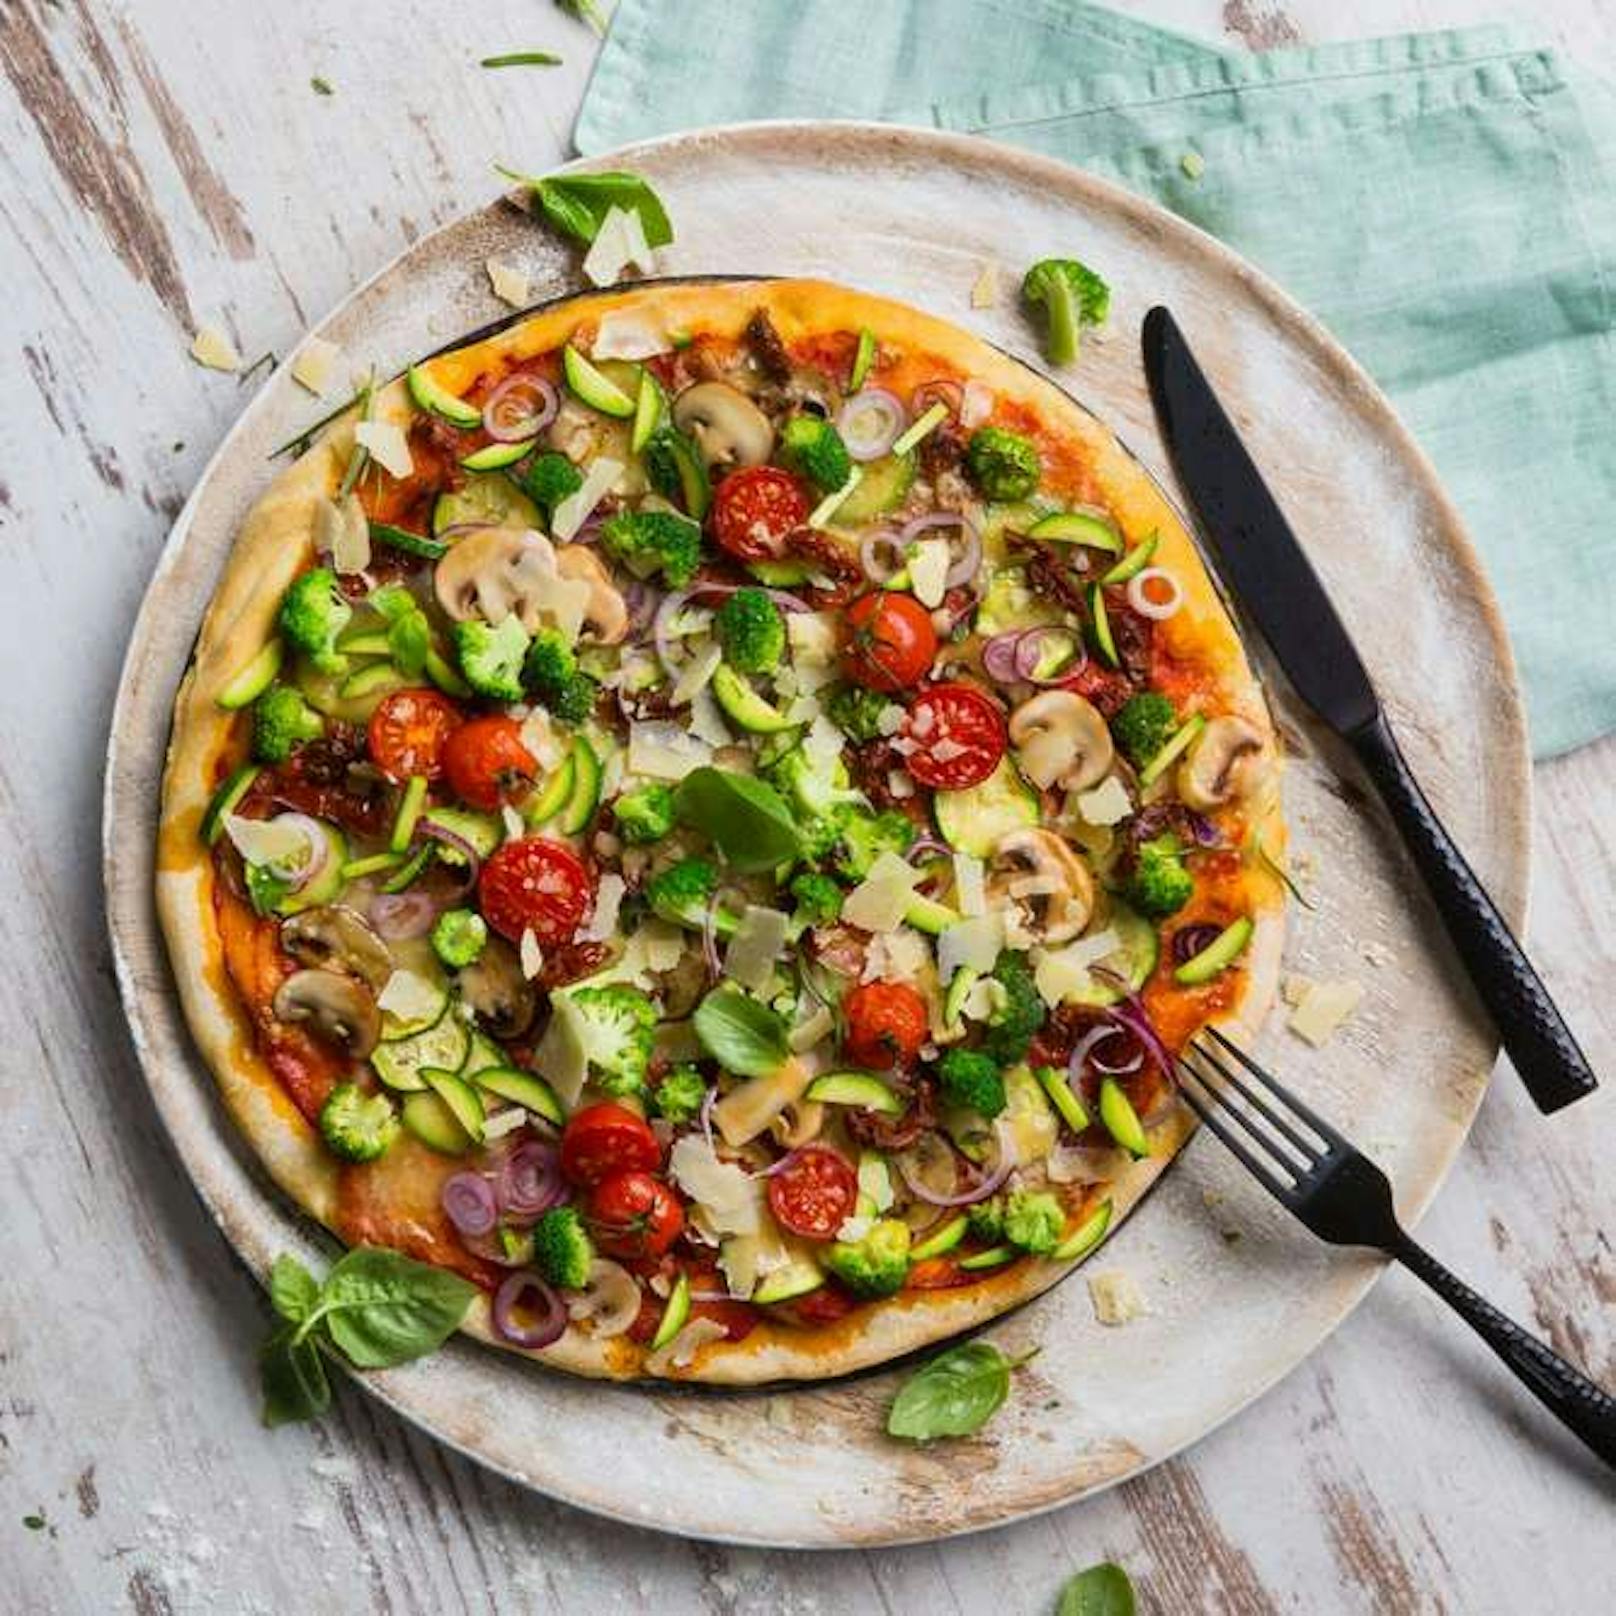 Der Vergleich der Geschlechter zeigt: Frauen bestellen häufiger Pizzabeläge mit Gemüse als Männer. 15 Prozent der Frauen gaben an, meistens vegetarische Pizzen zu bestellen. Bei den Männern waren es nur knapp 7 Prozent.